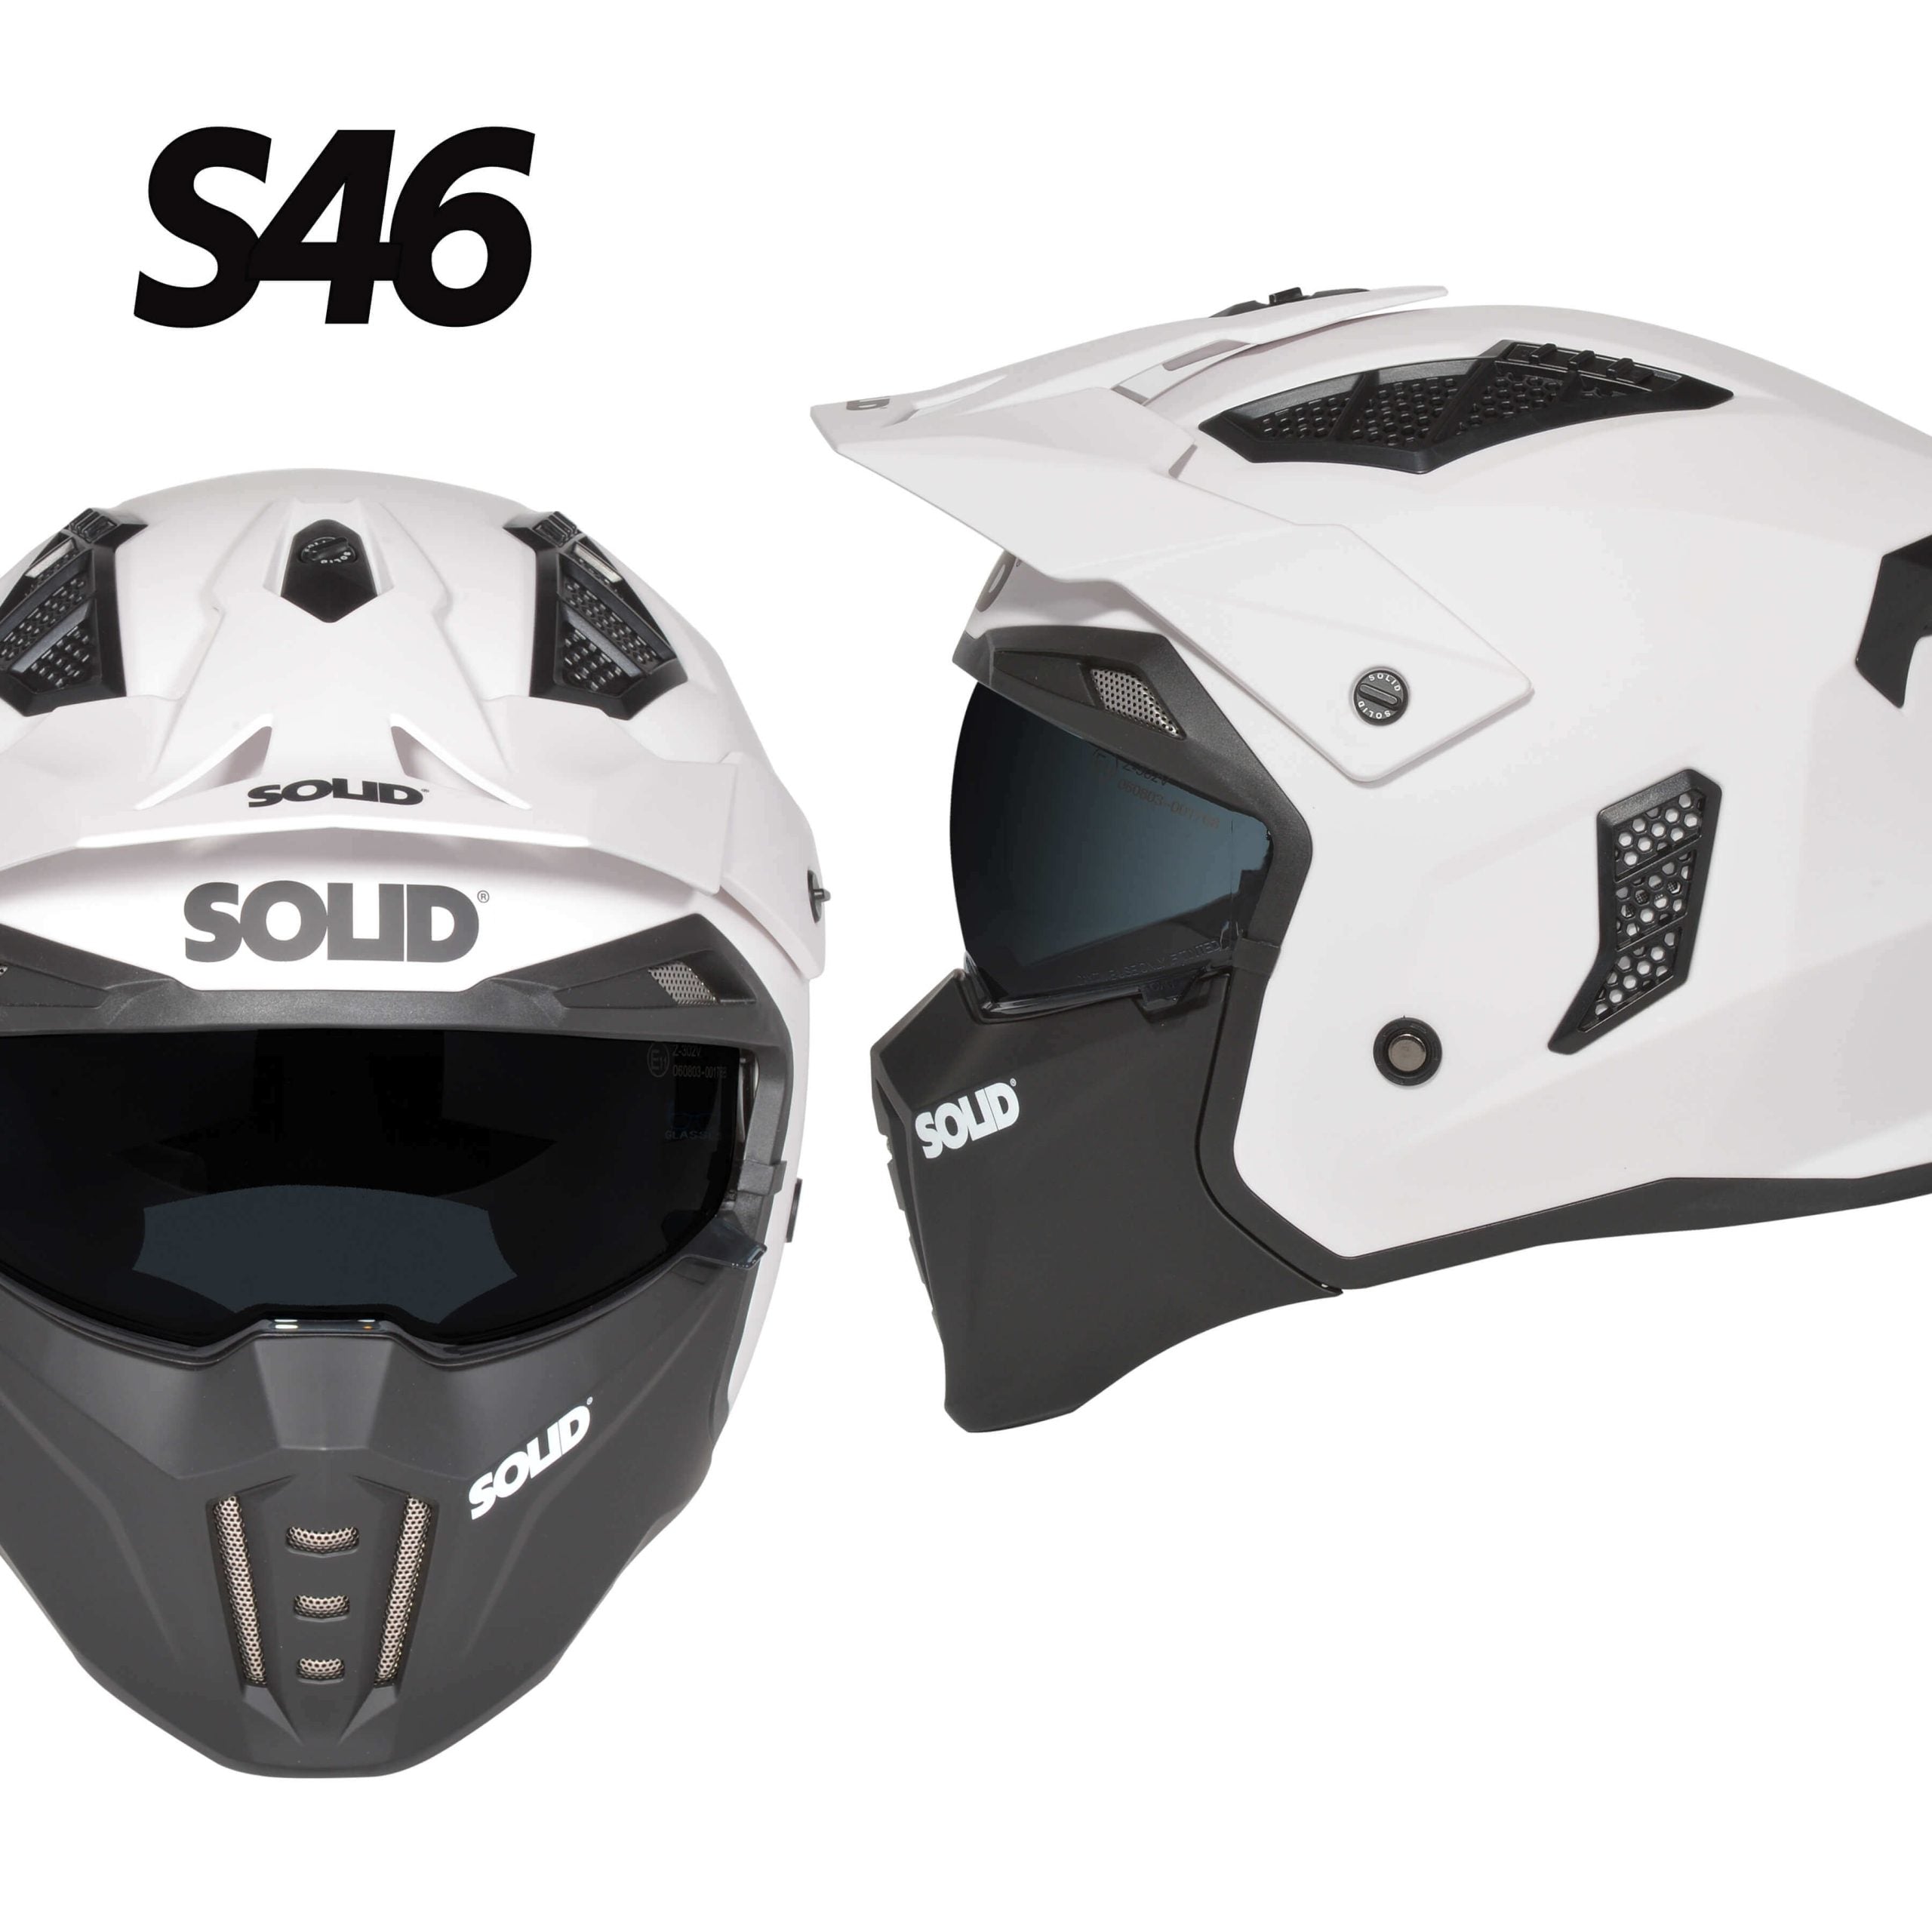 S46 Helmet